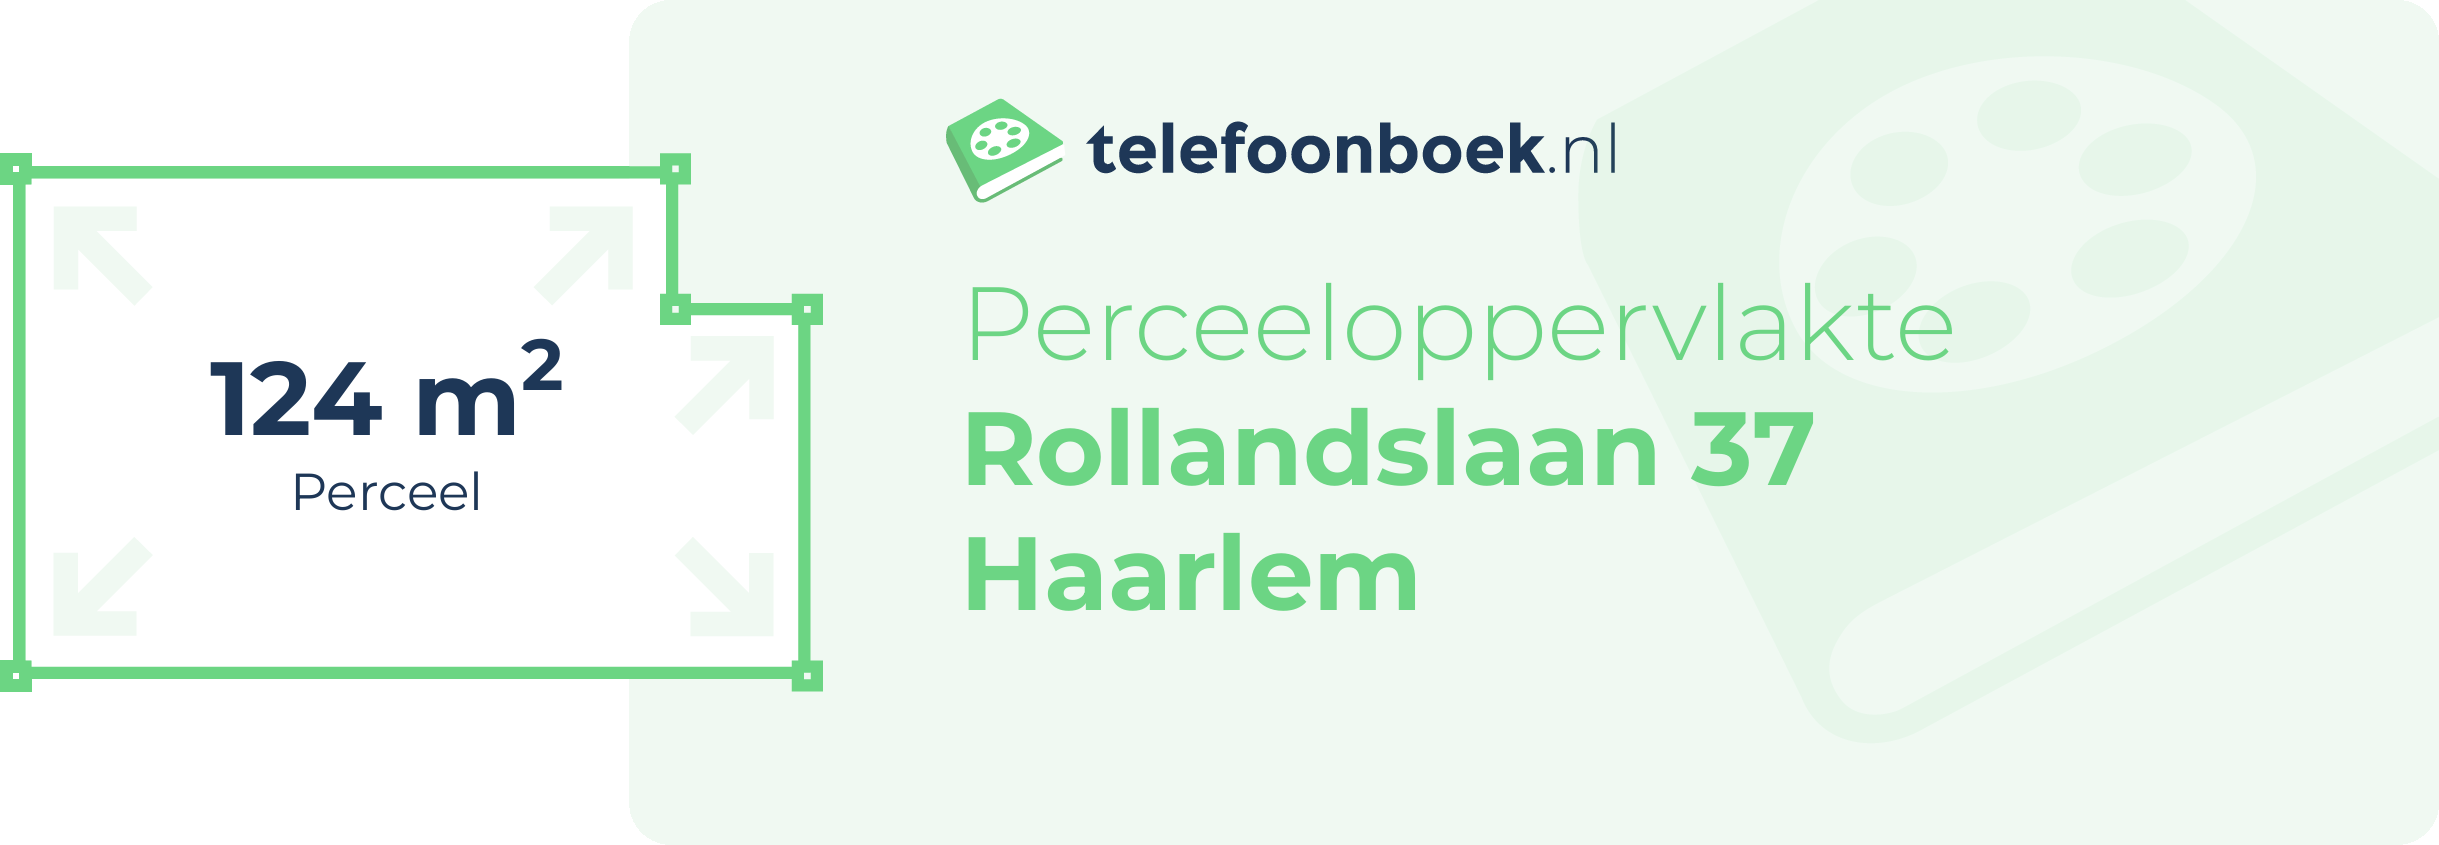 Perceeloppervlakte Rollandslaan 37 Haarlem